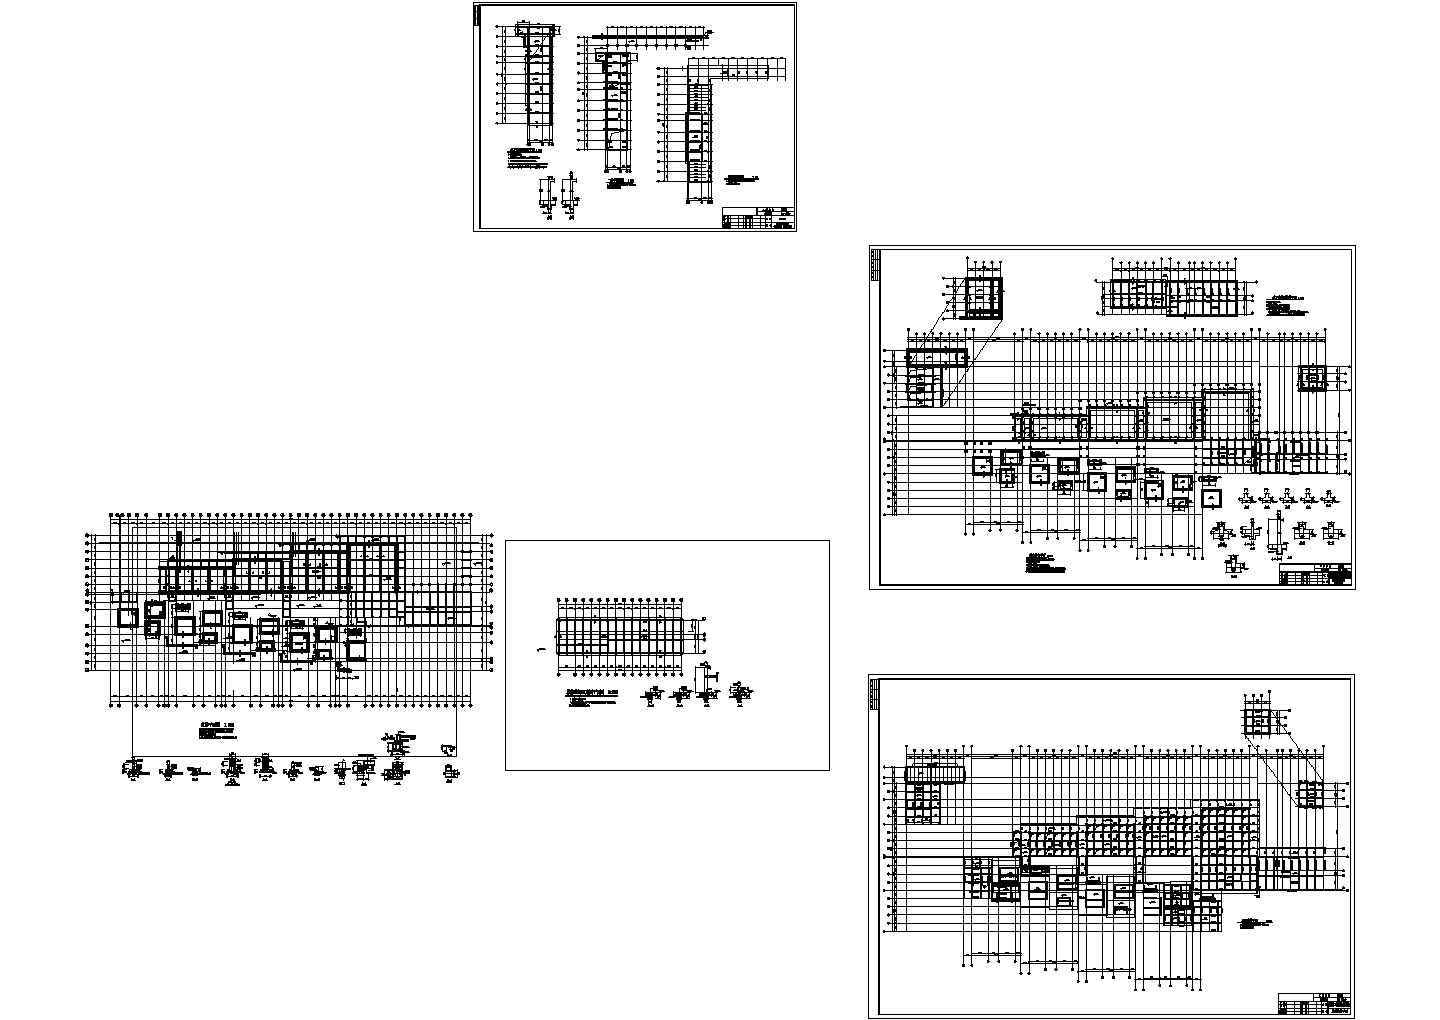 某地区某博物馆建筑馆结构修改CAD设计图纸（绘图细致）